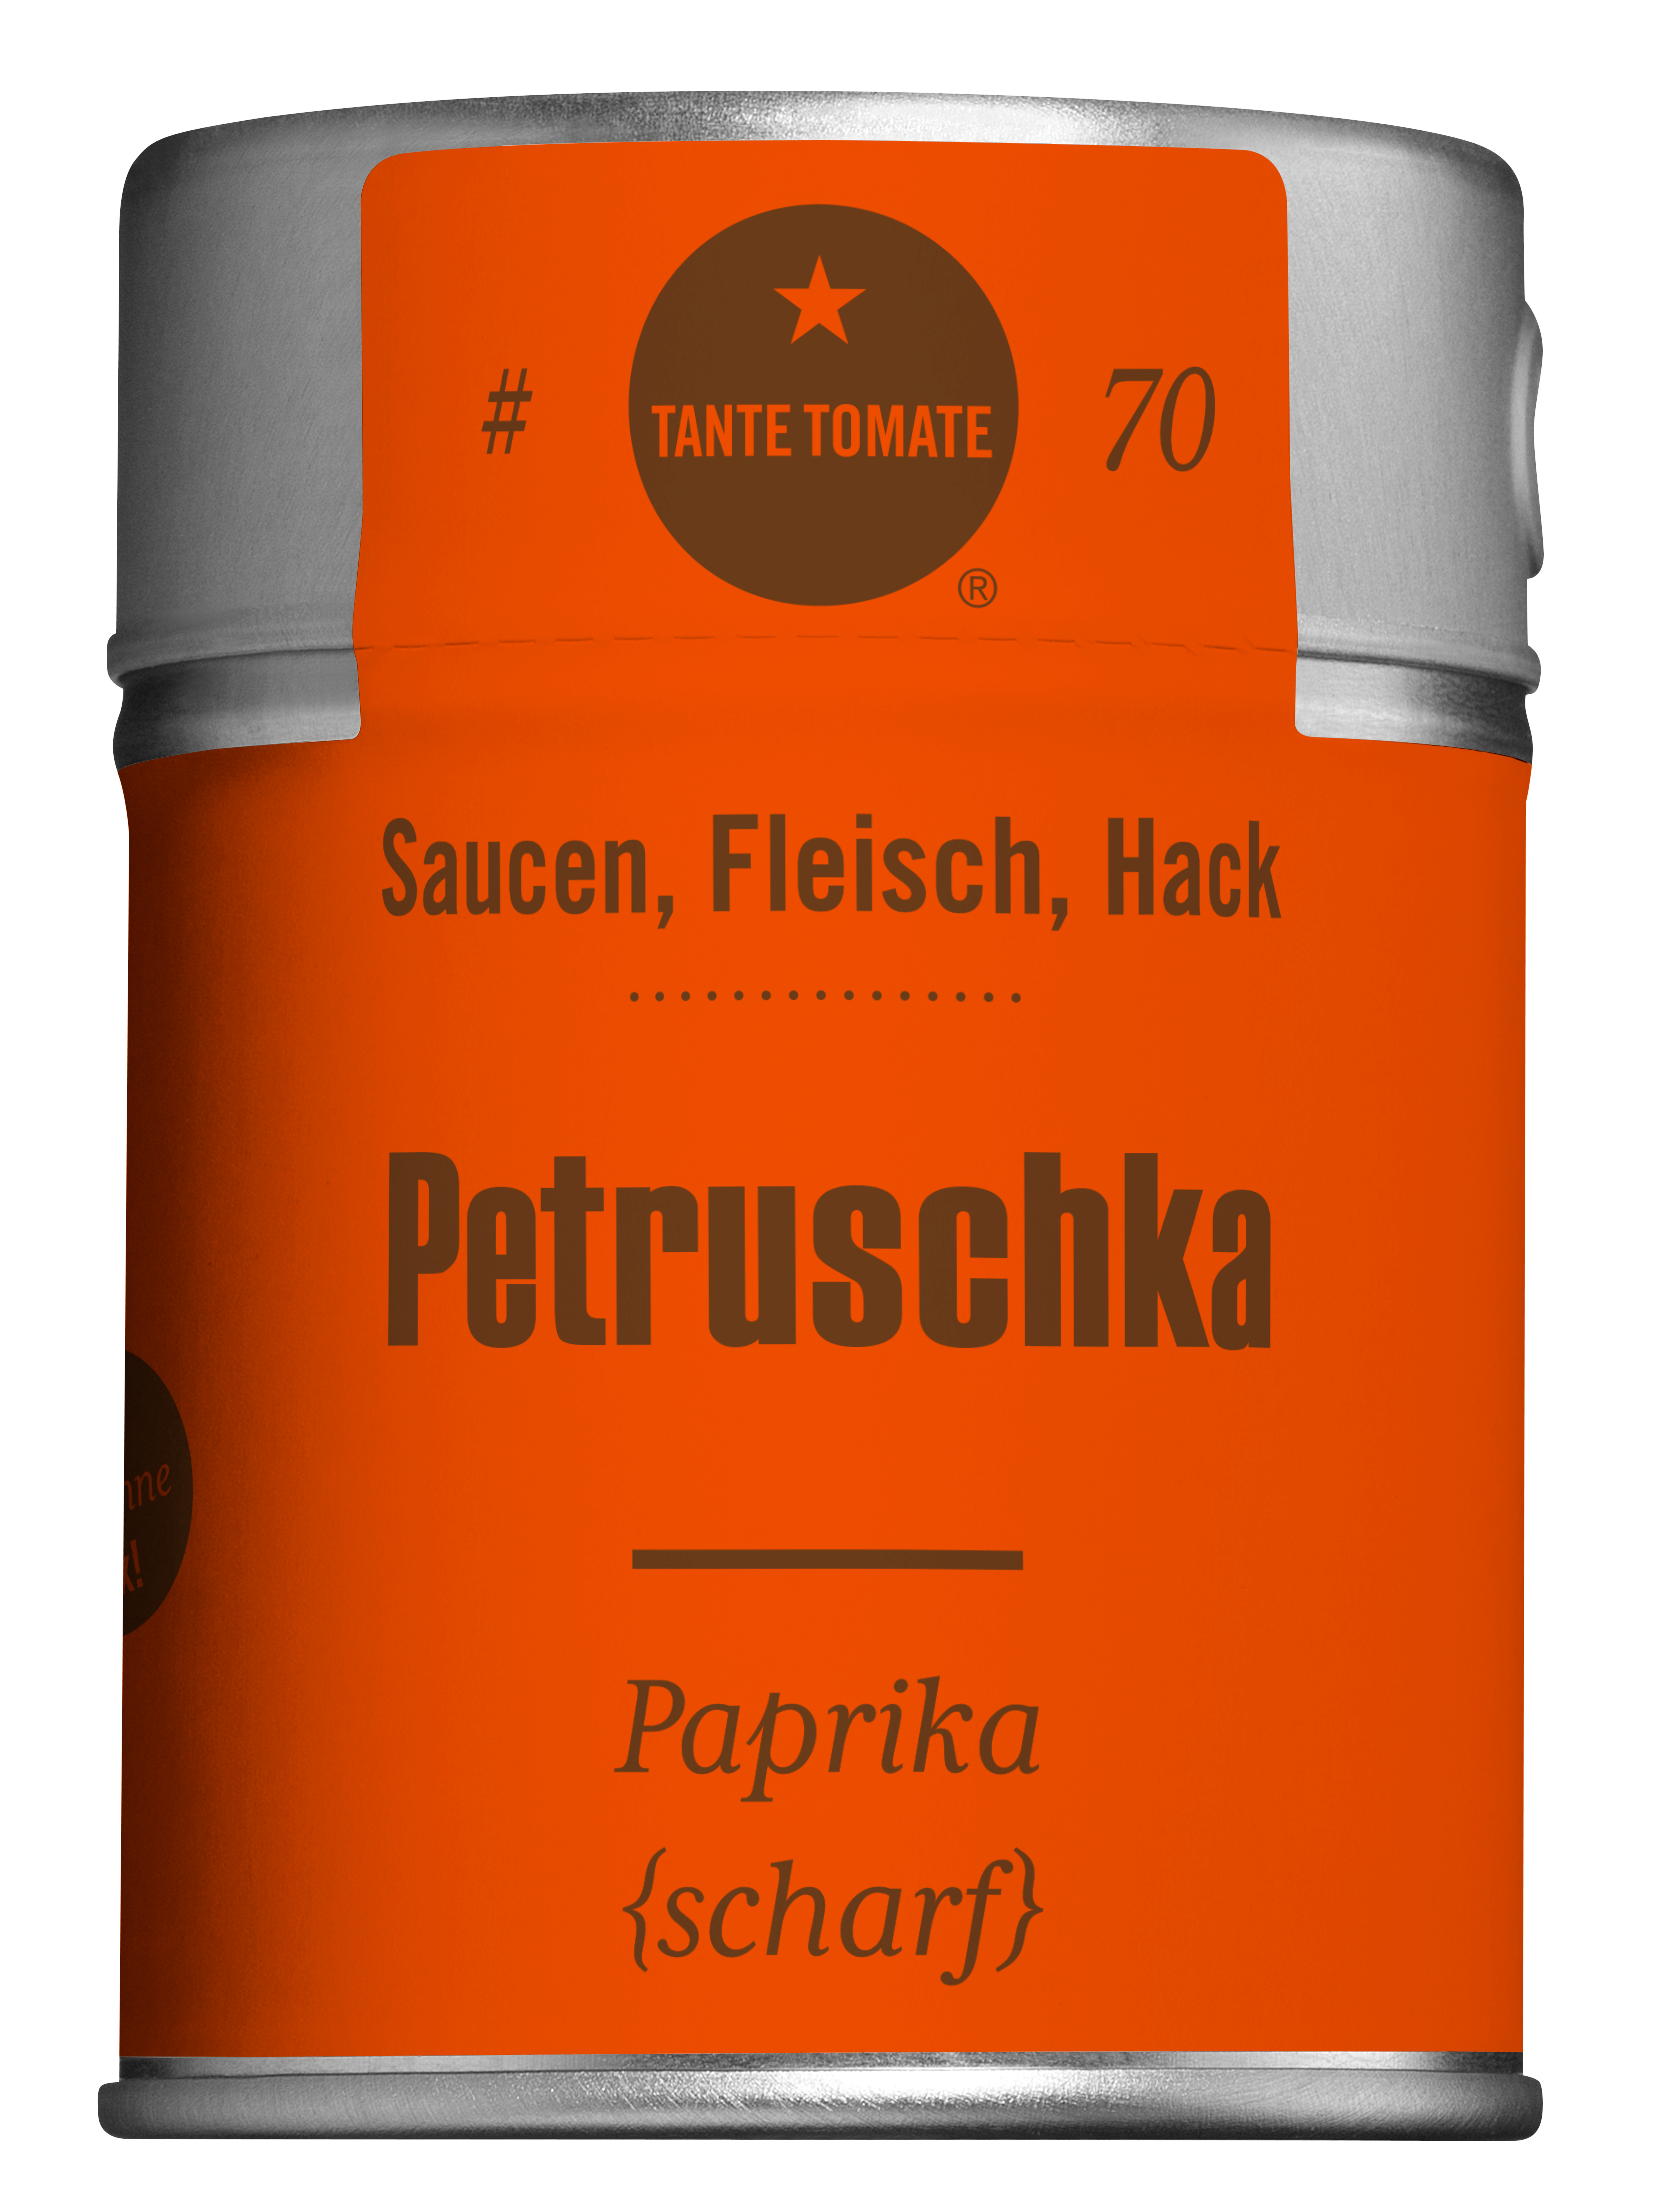 #70 Petruschka